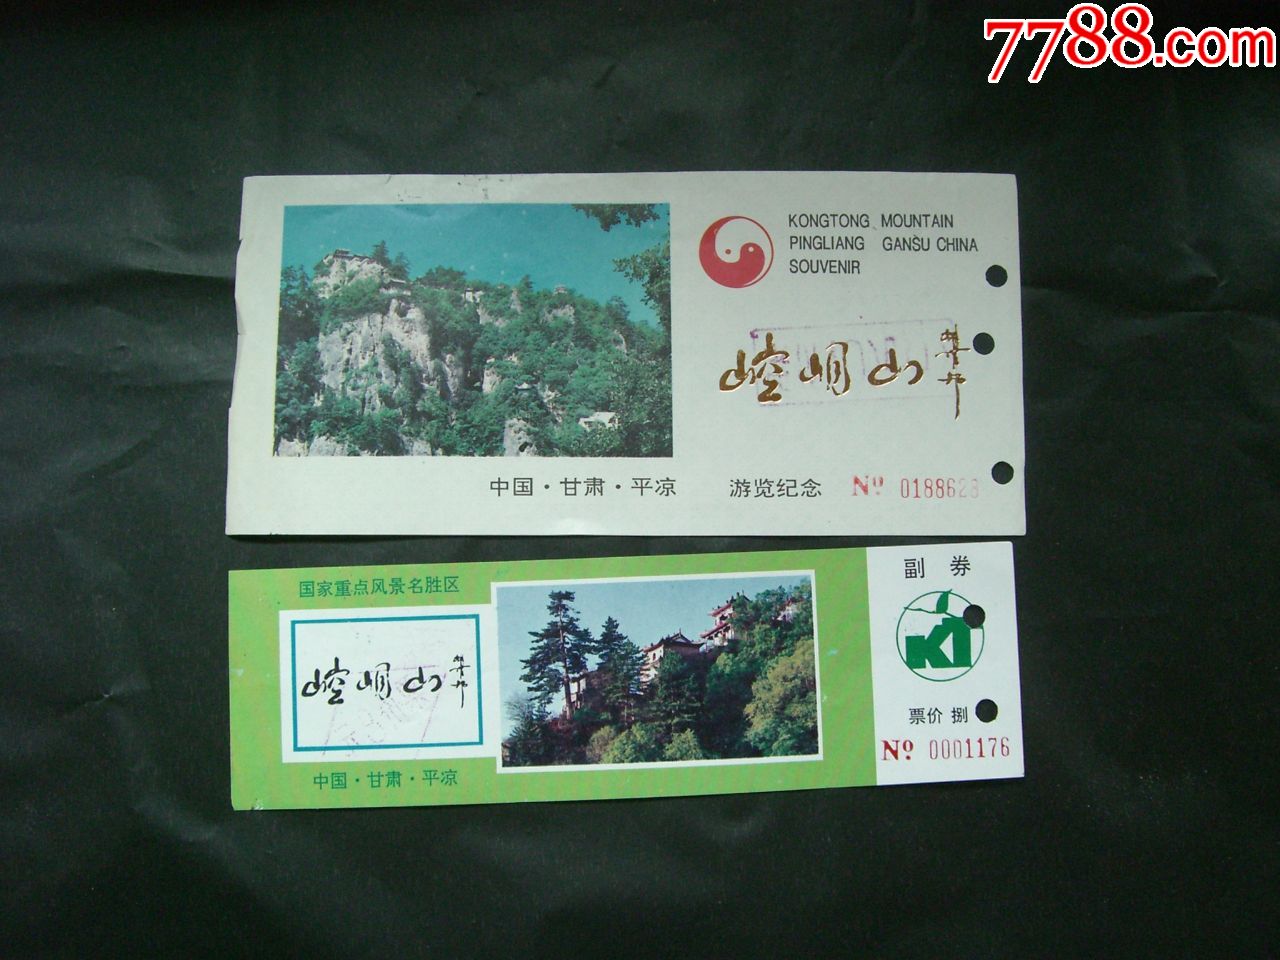 崆峒山景区门票图片